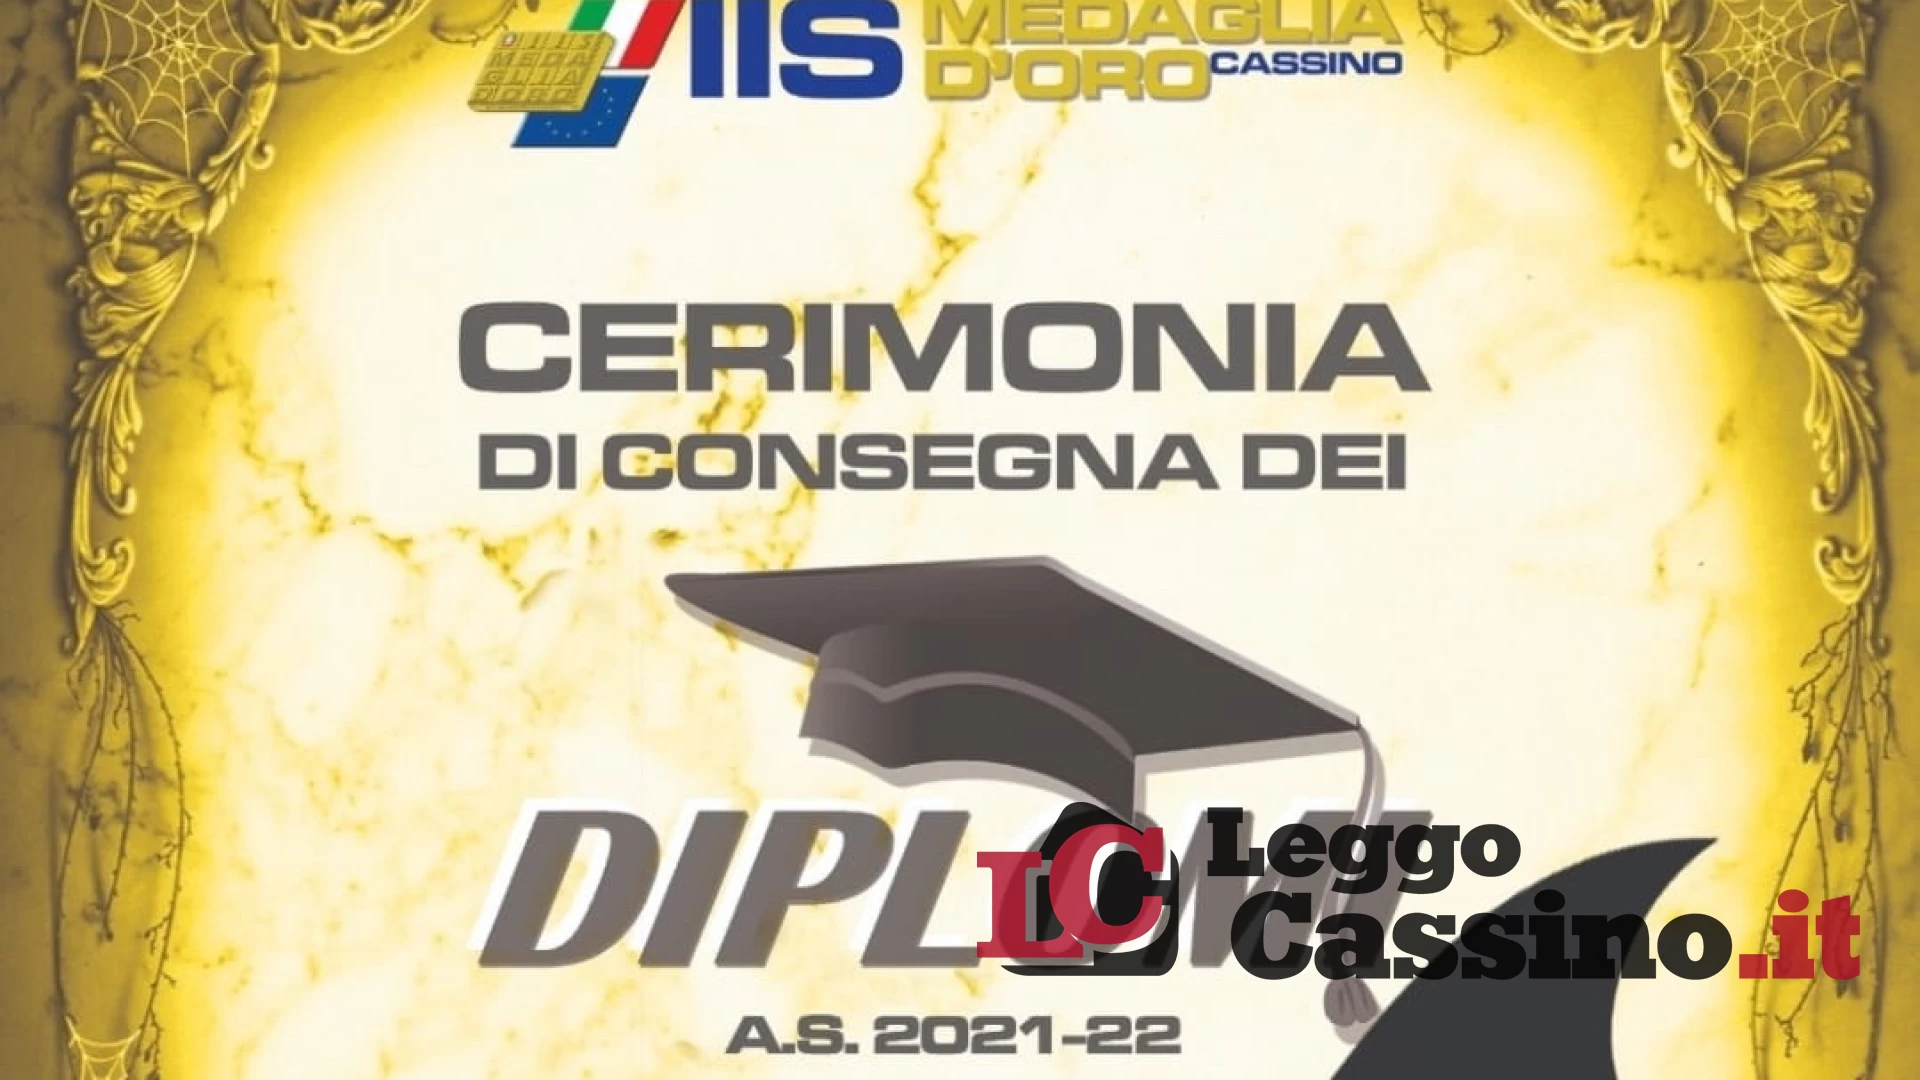 Cerimonia di consegna dei diplomi all'I.I.S. Medaglia d'Oro "Città di Cassino"